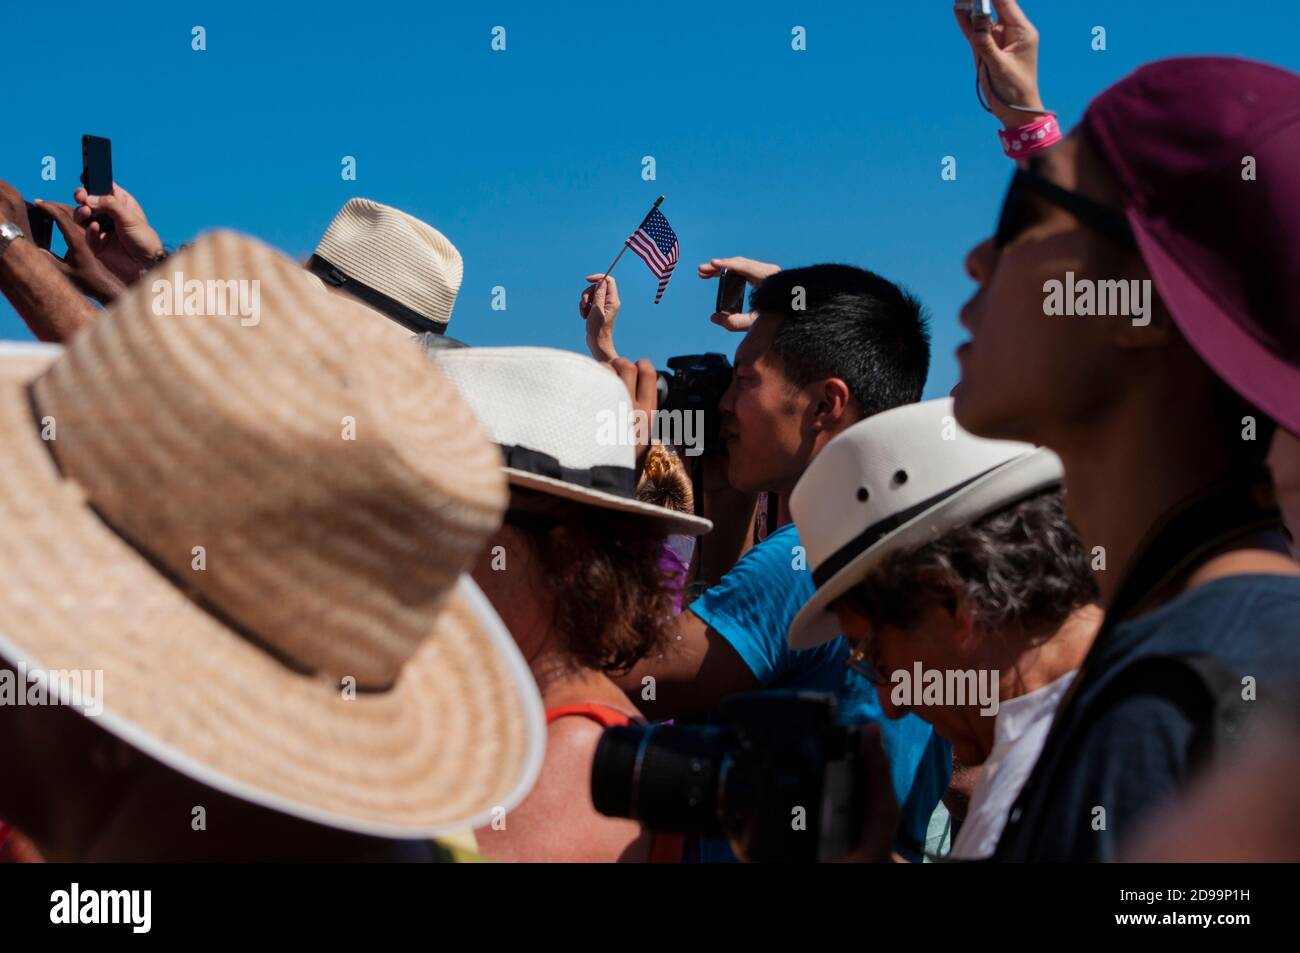 LA HAVANE, CUBA - 08/14/2015. Manifestation portant le drapeau américain à l'extérieur de l'ambassade des États-Unis à Cuba pour soutenir les États-Unis Banque D'Images